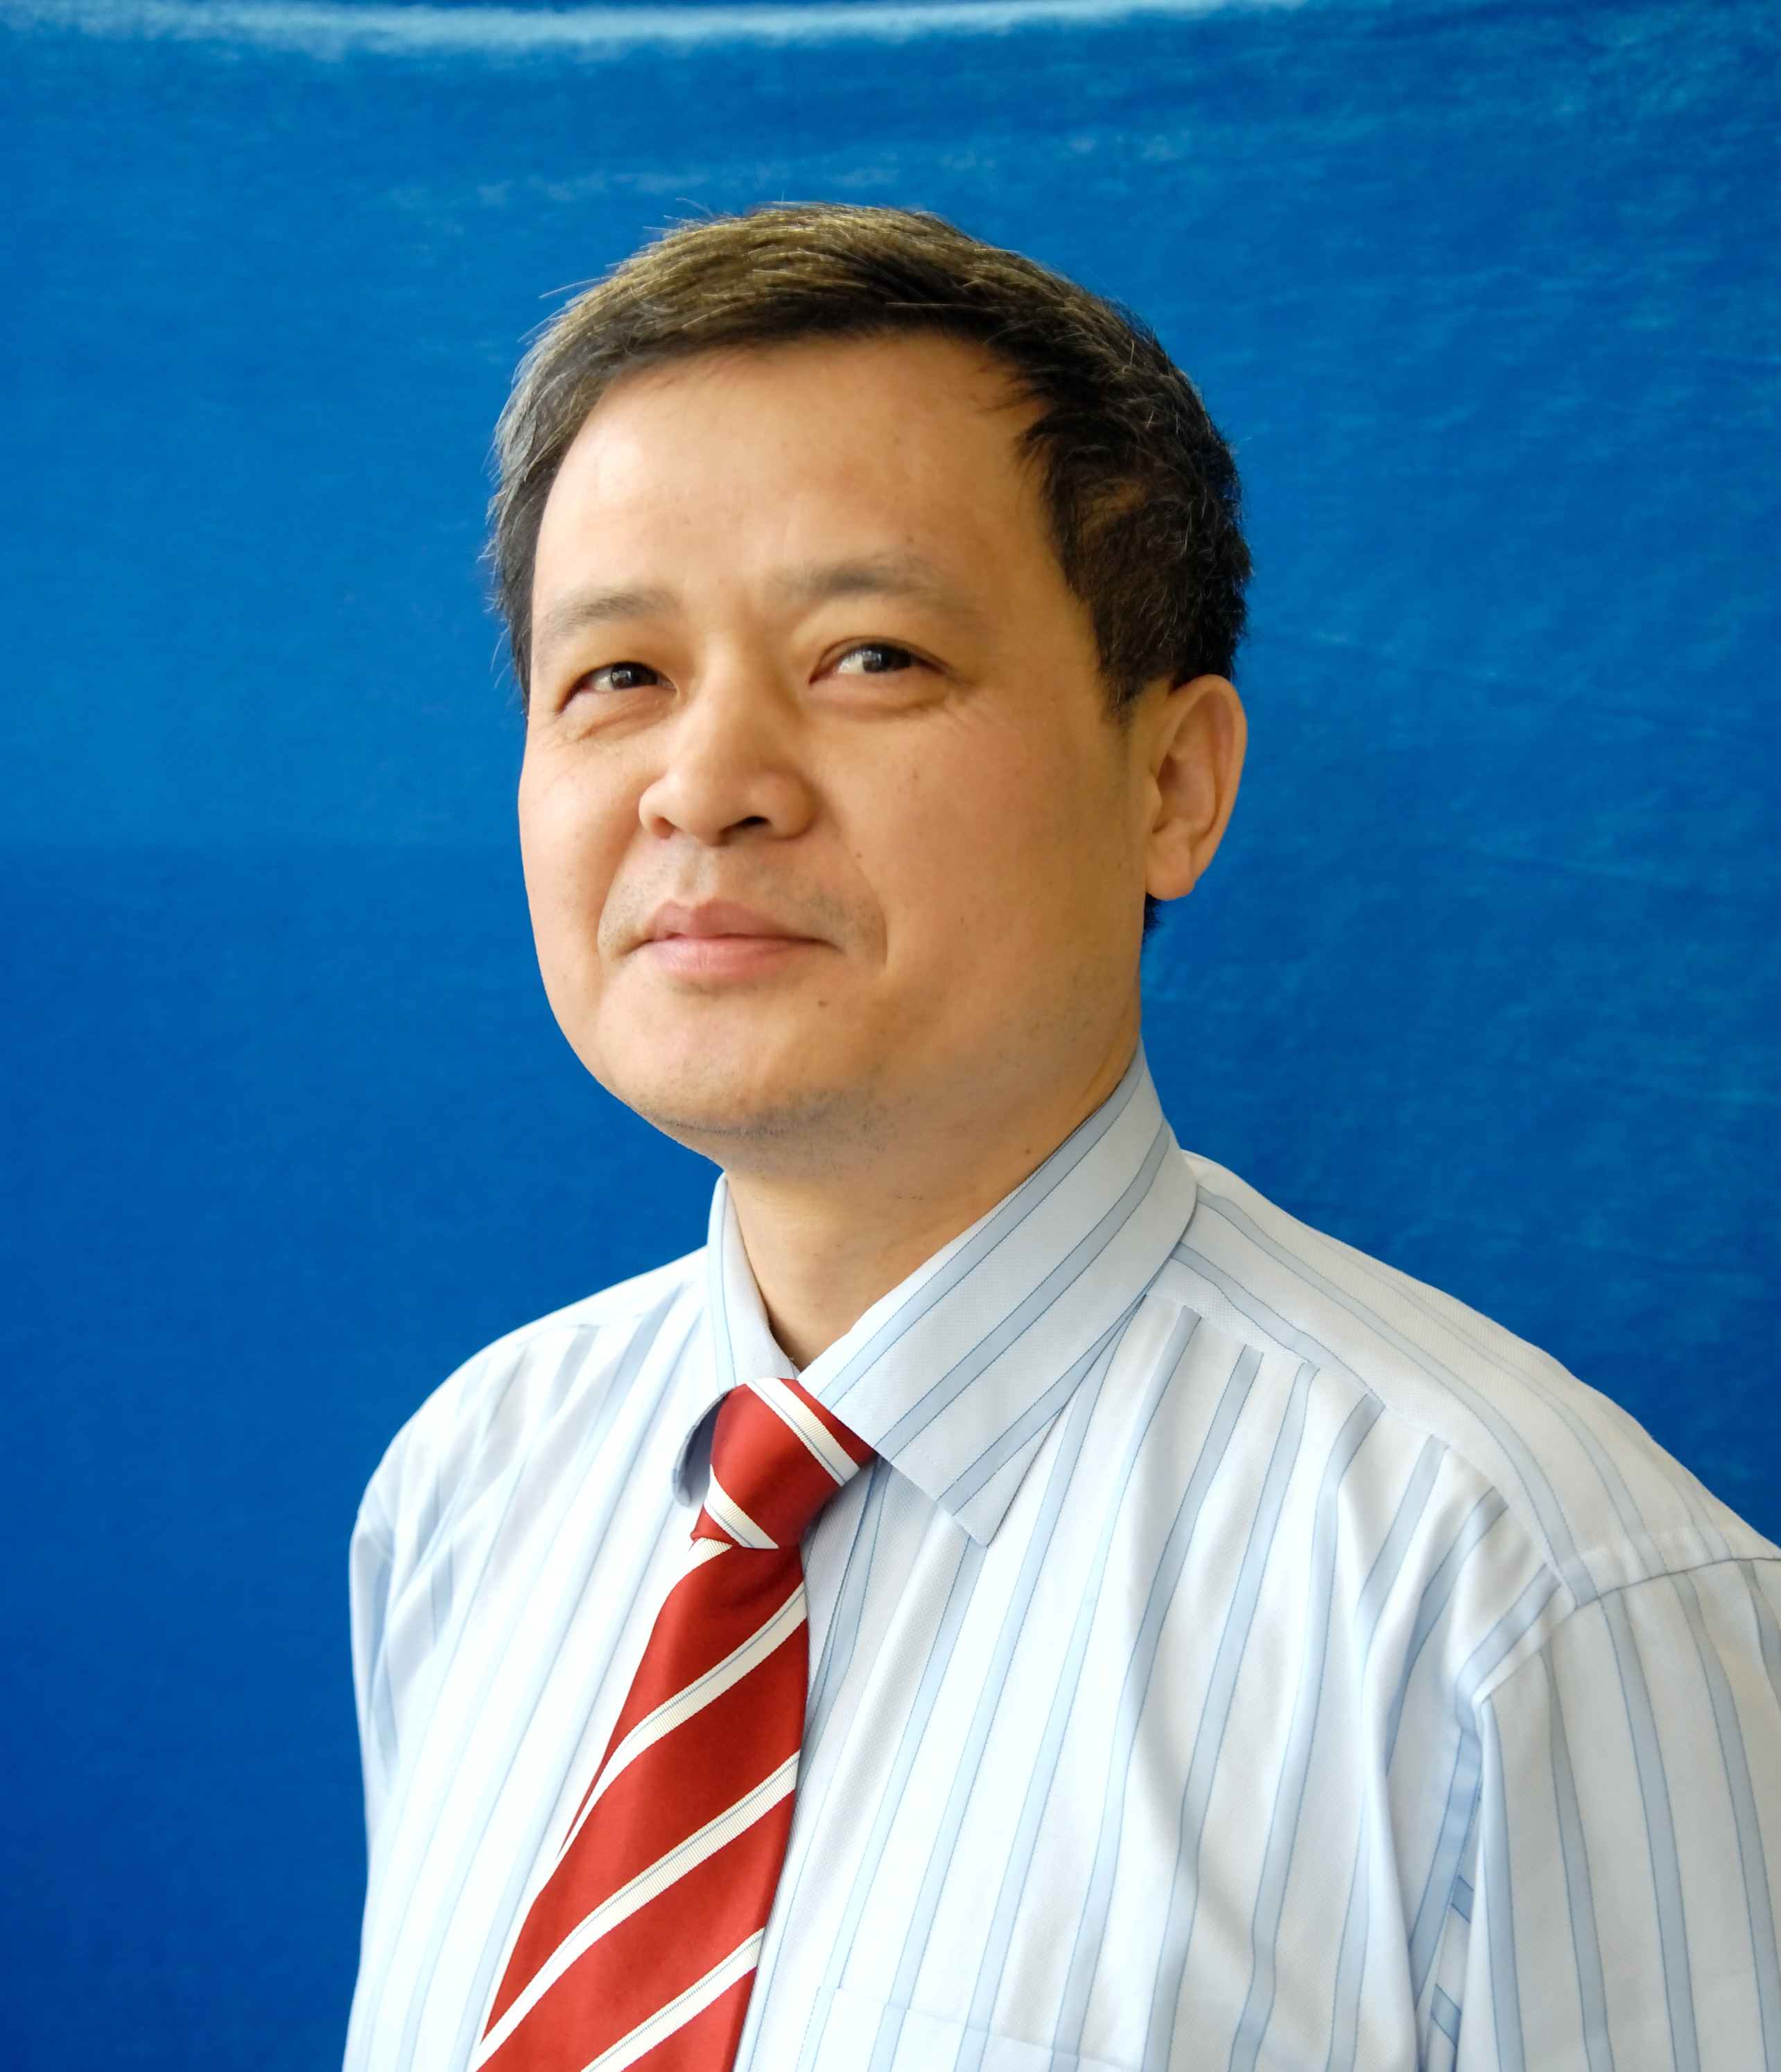 Mr. Yang Xianghong